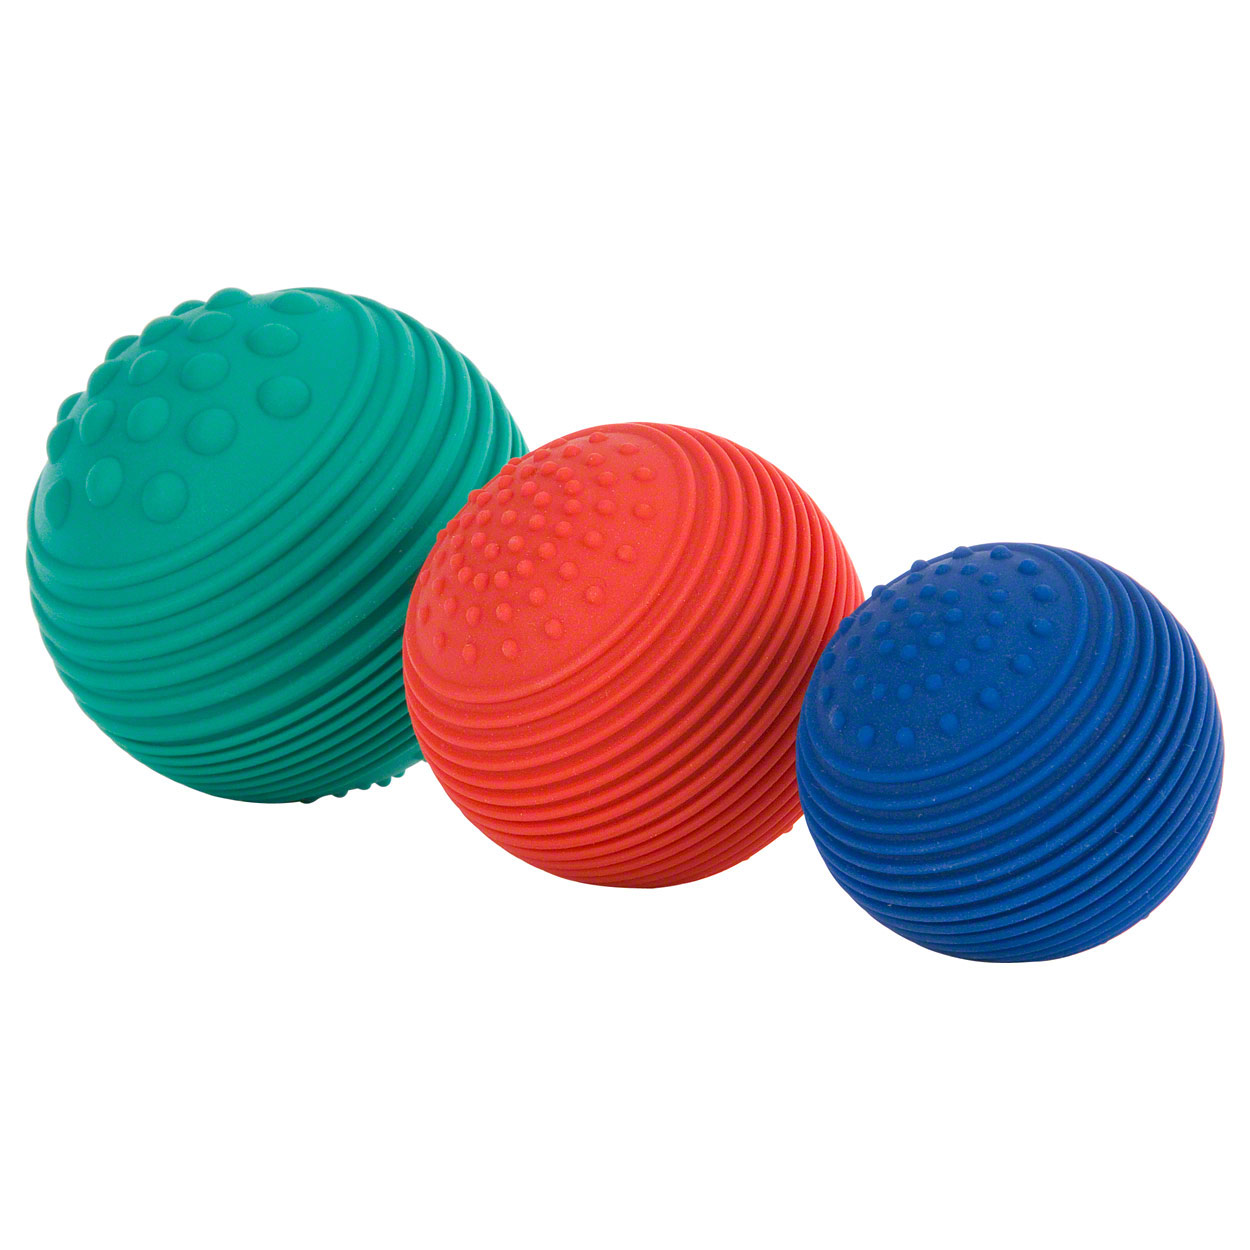 güne, roter und blauer Reflexball